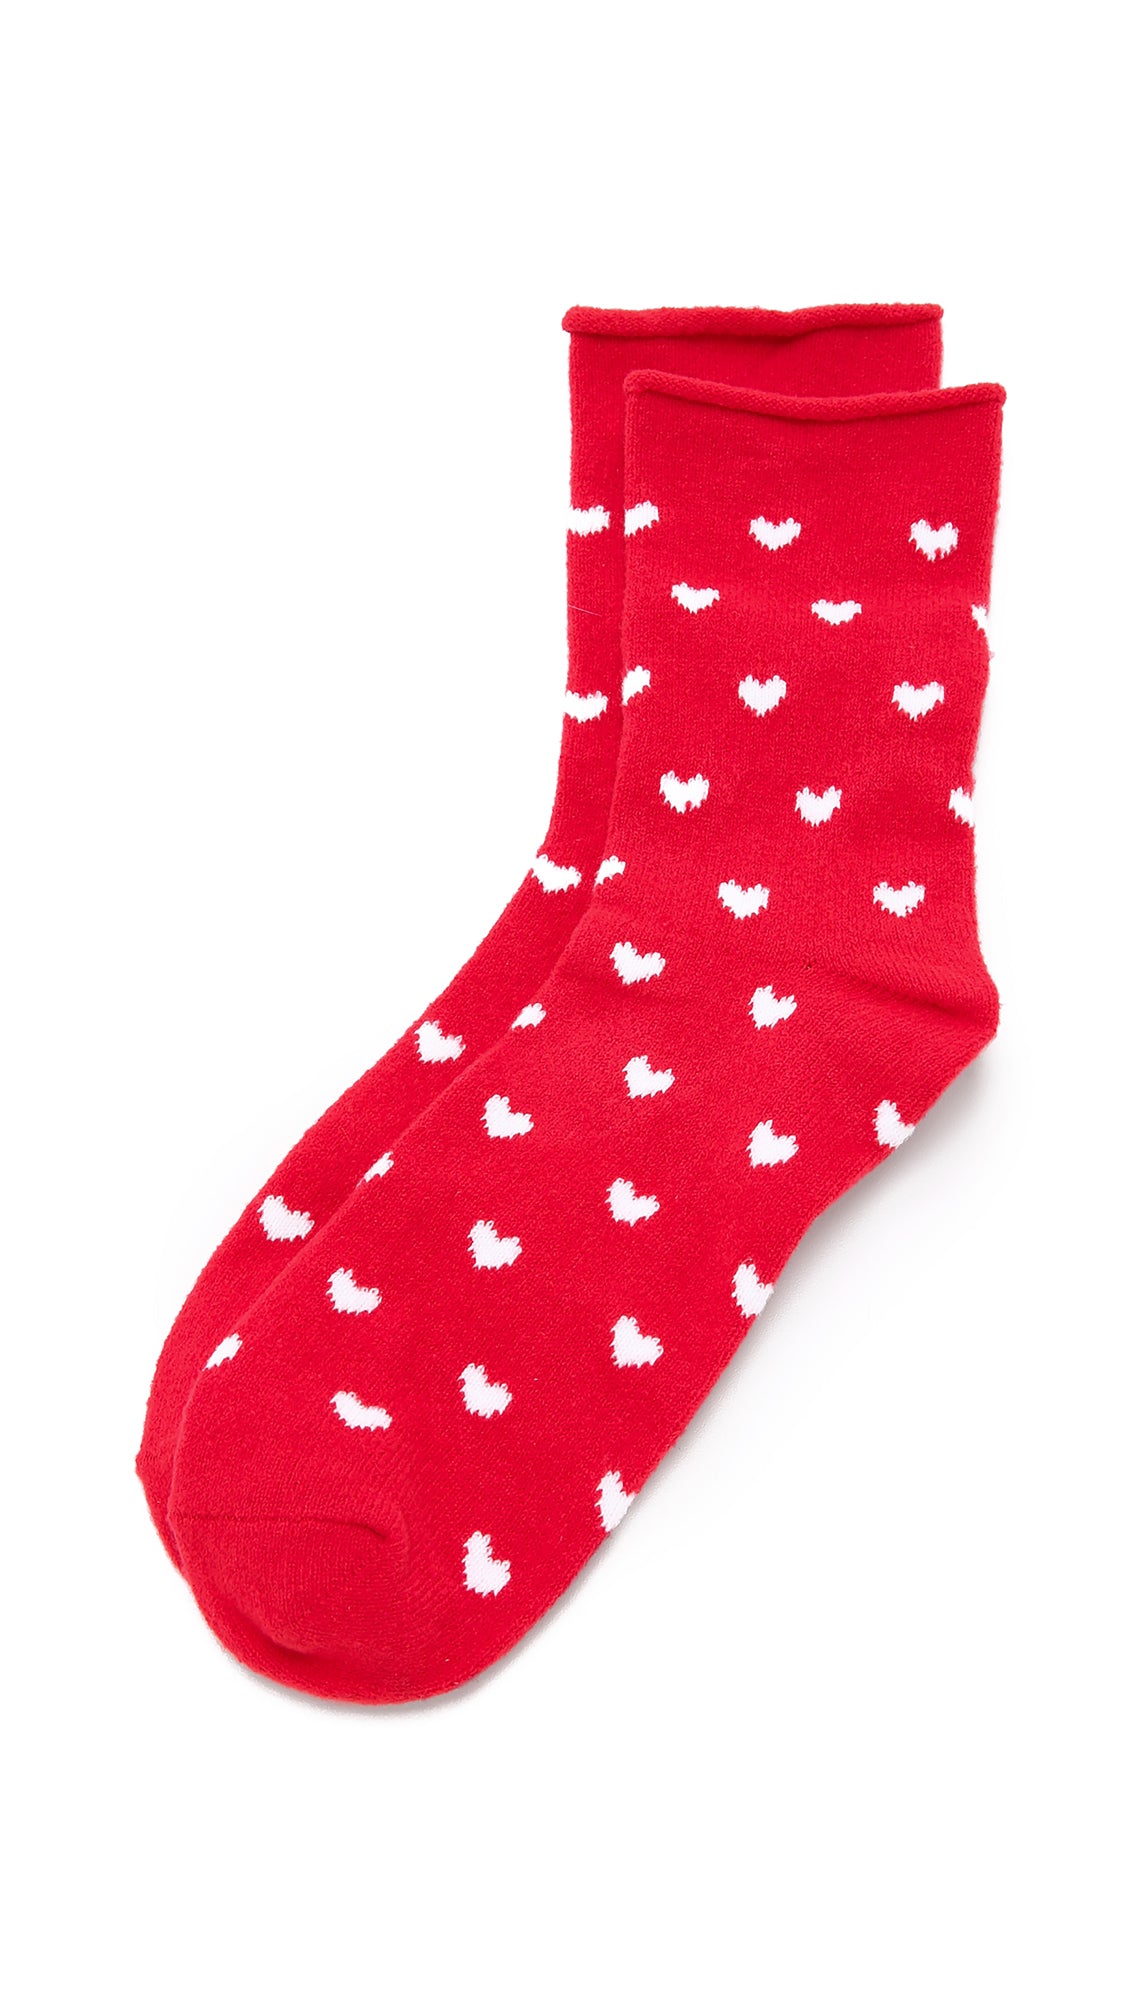 Plush Fleece Rolled Ankle Socks White Heart Print Red